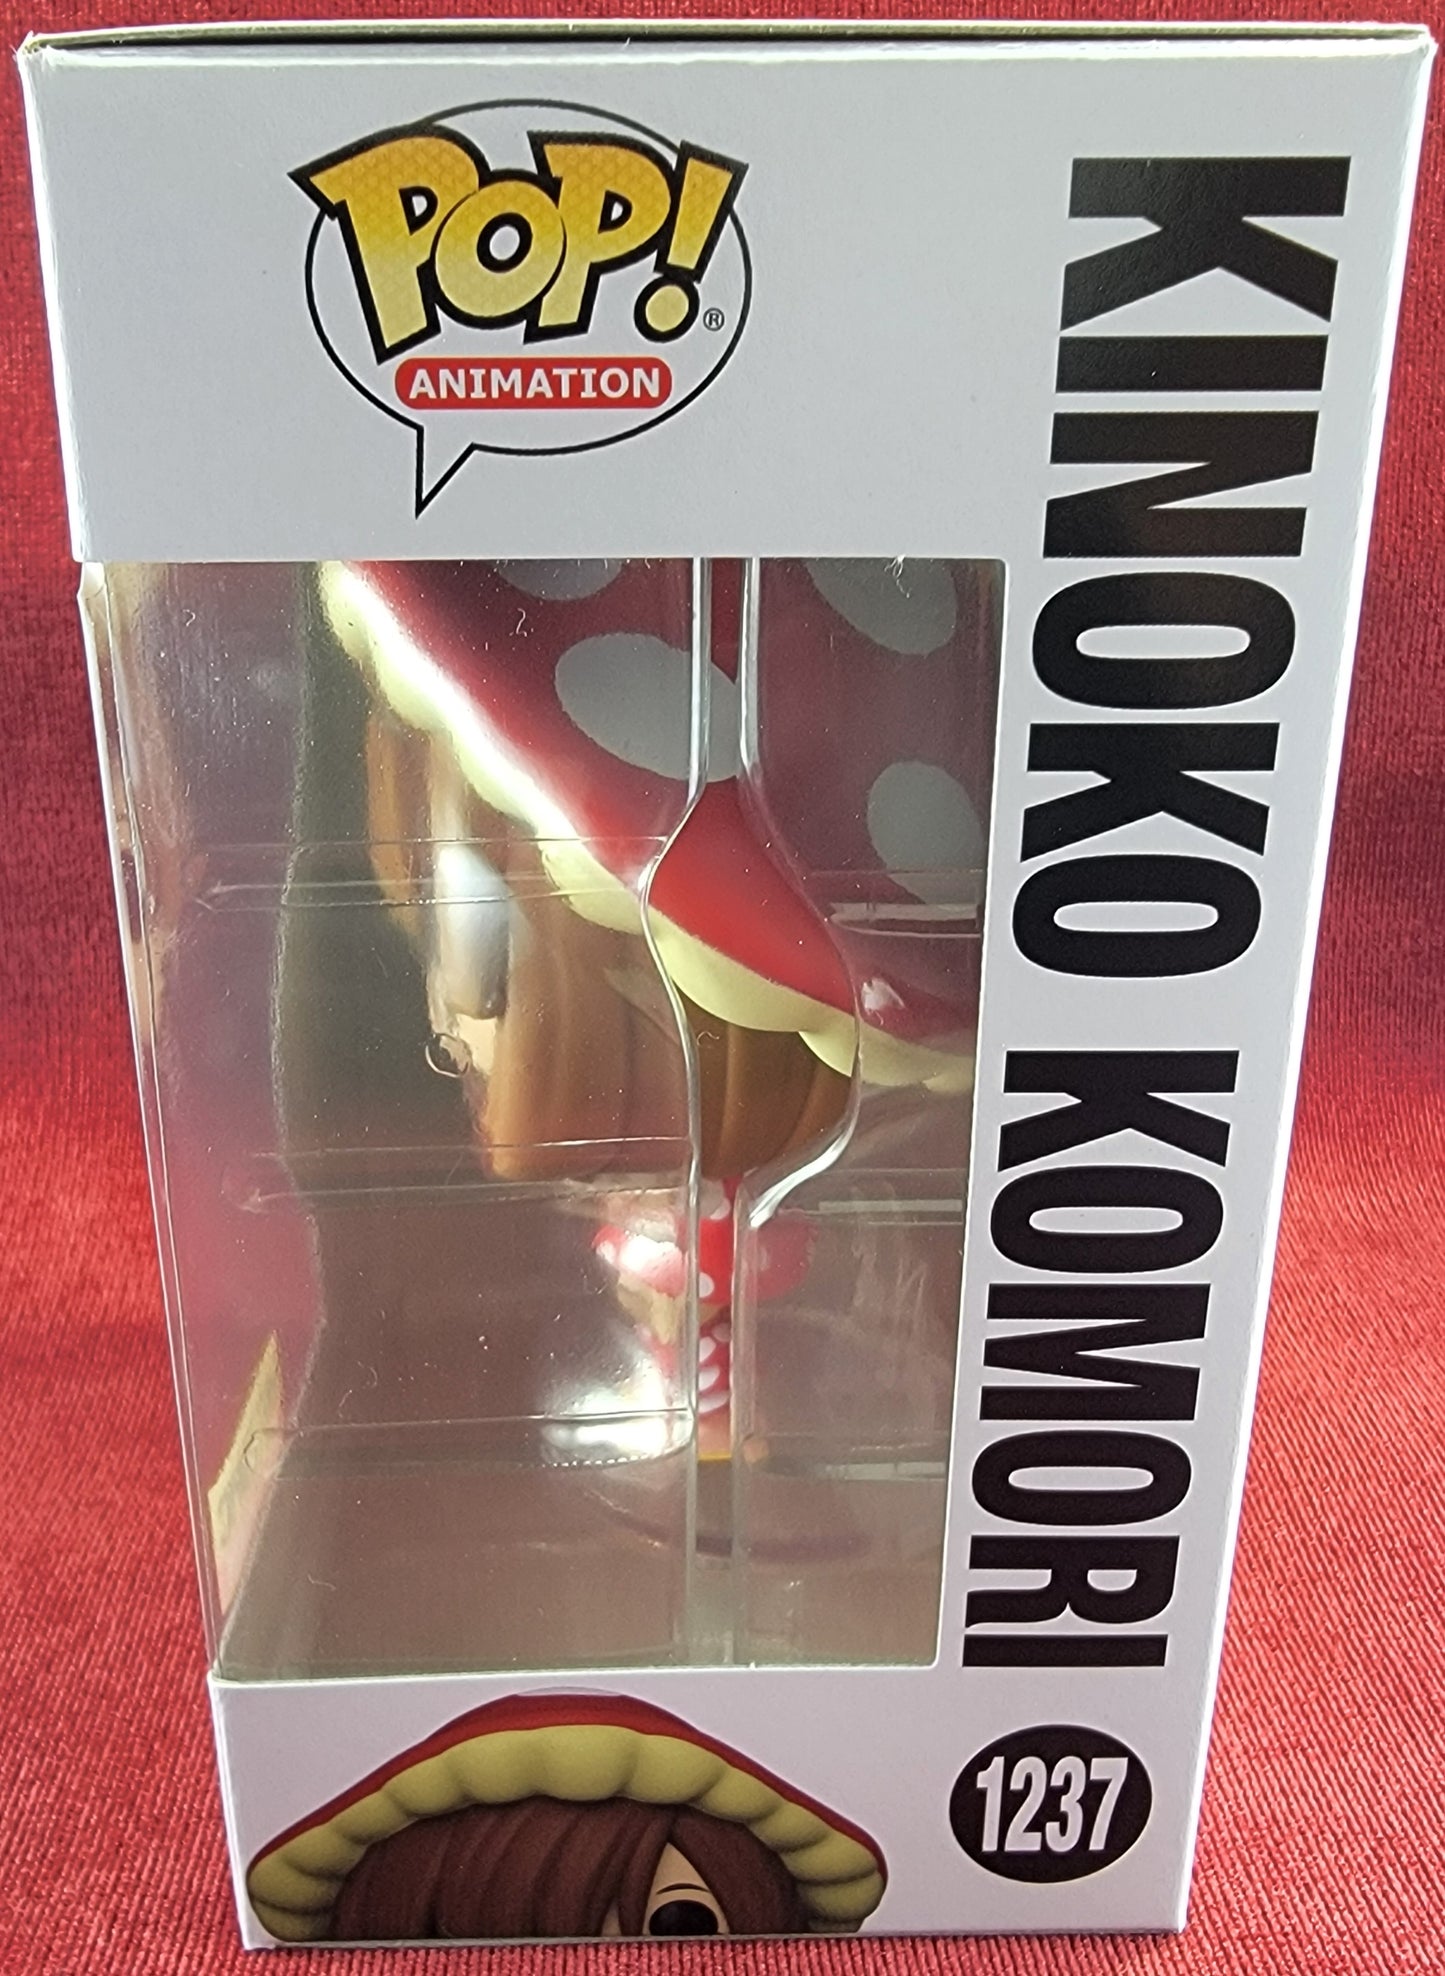 Kinoko Komori  hot topic exclusive funko # 1237 (nib)
With pop protector